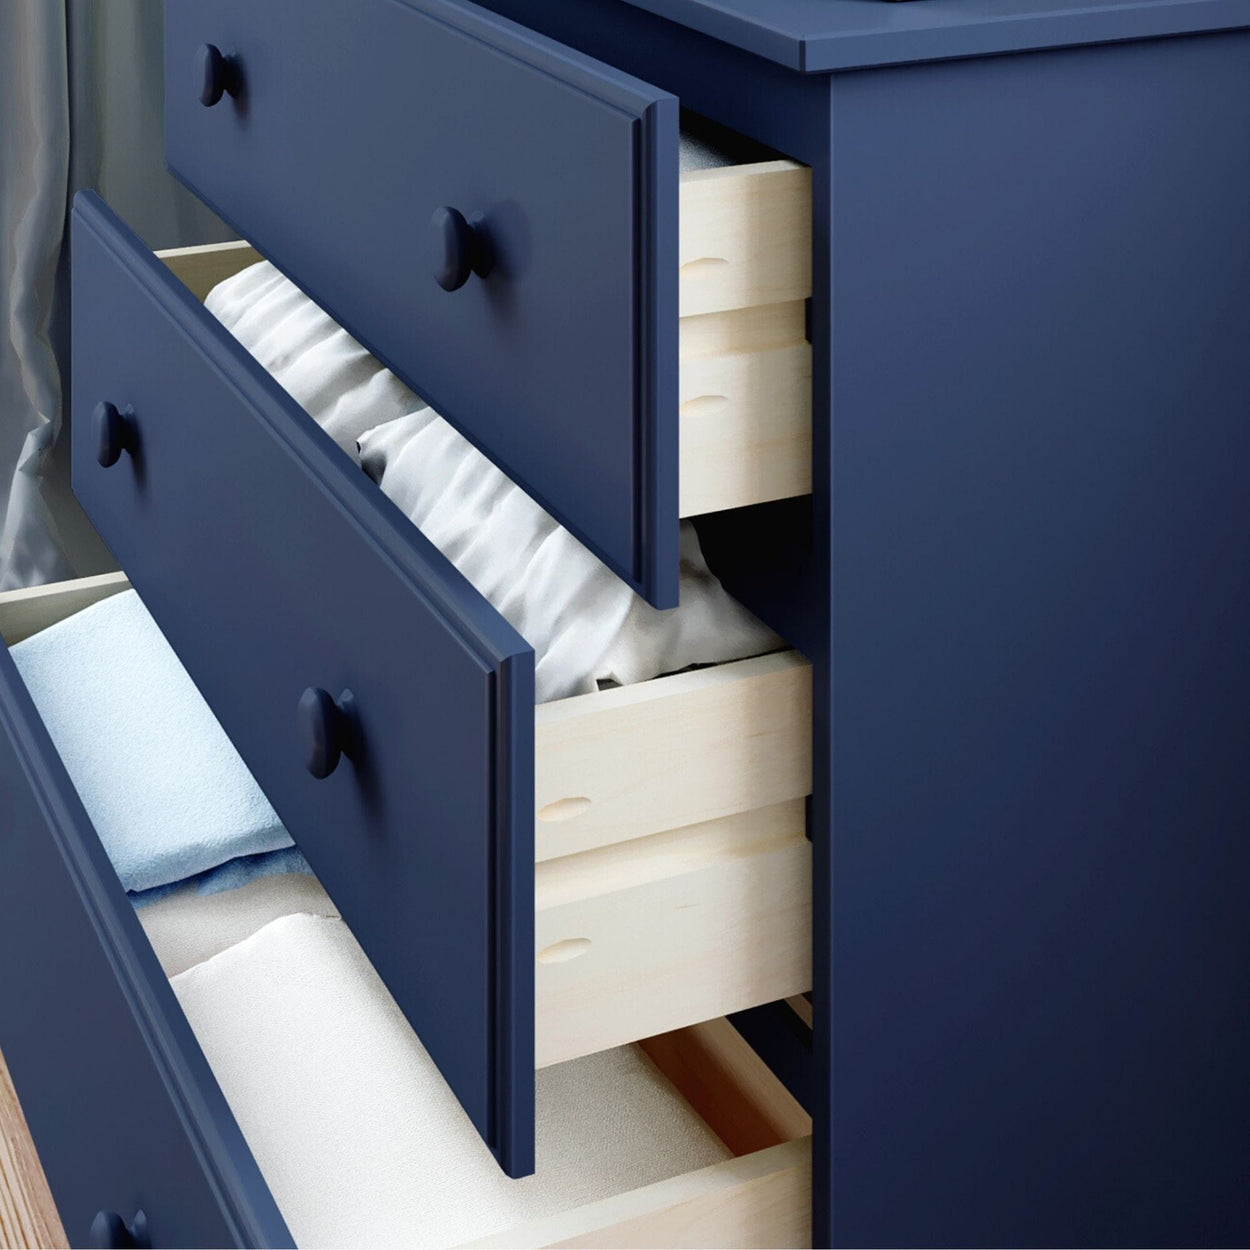 180013-131 : Furniture 3-Drawer Dresser, Blue